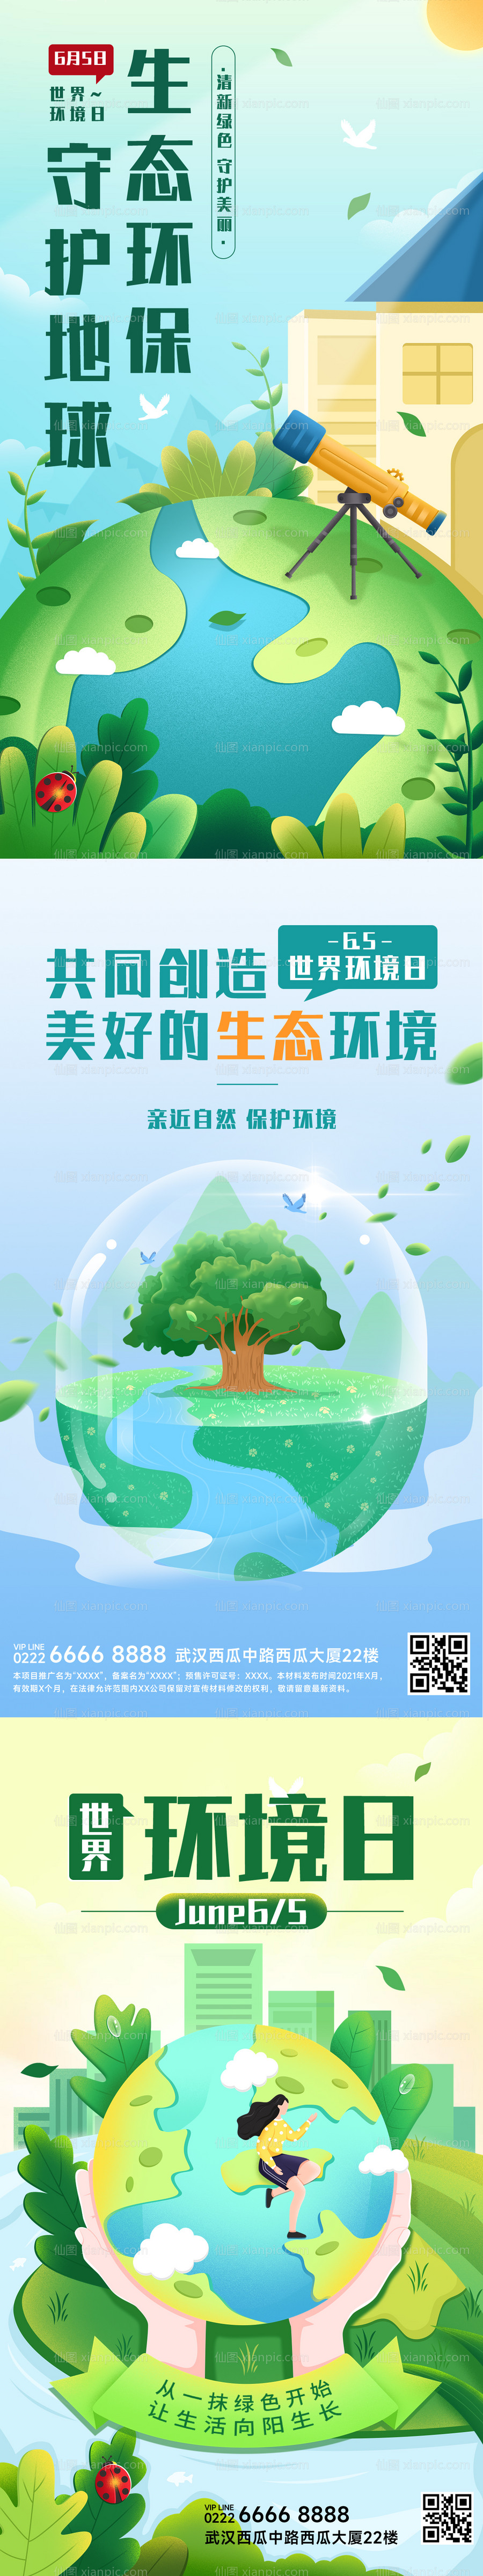 素材乐-世界环境日节日宣传插画手机海报